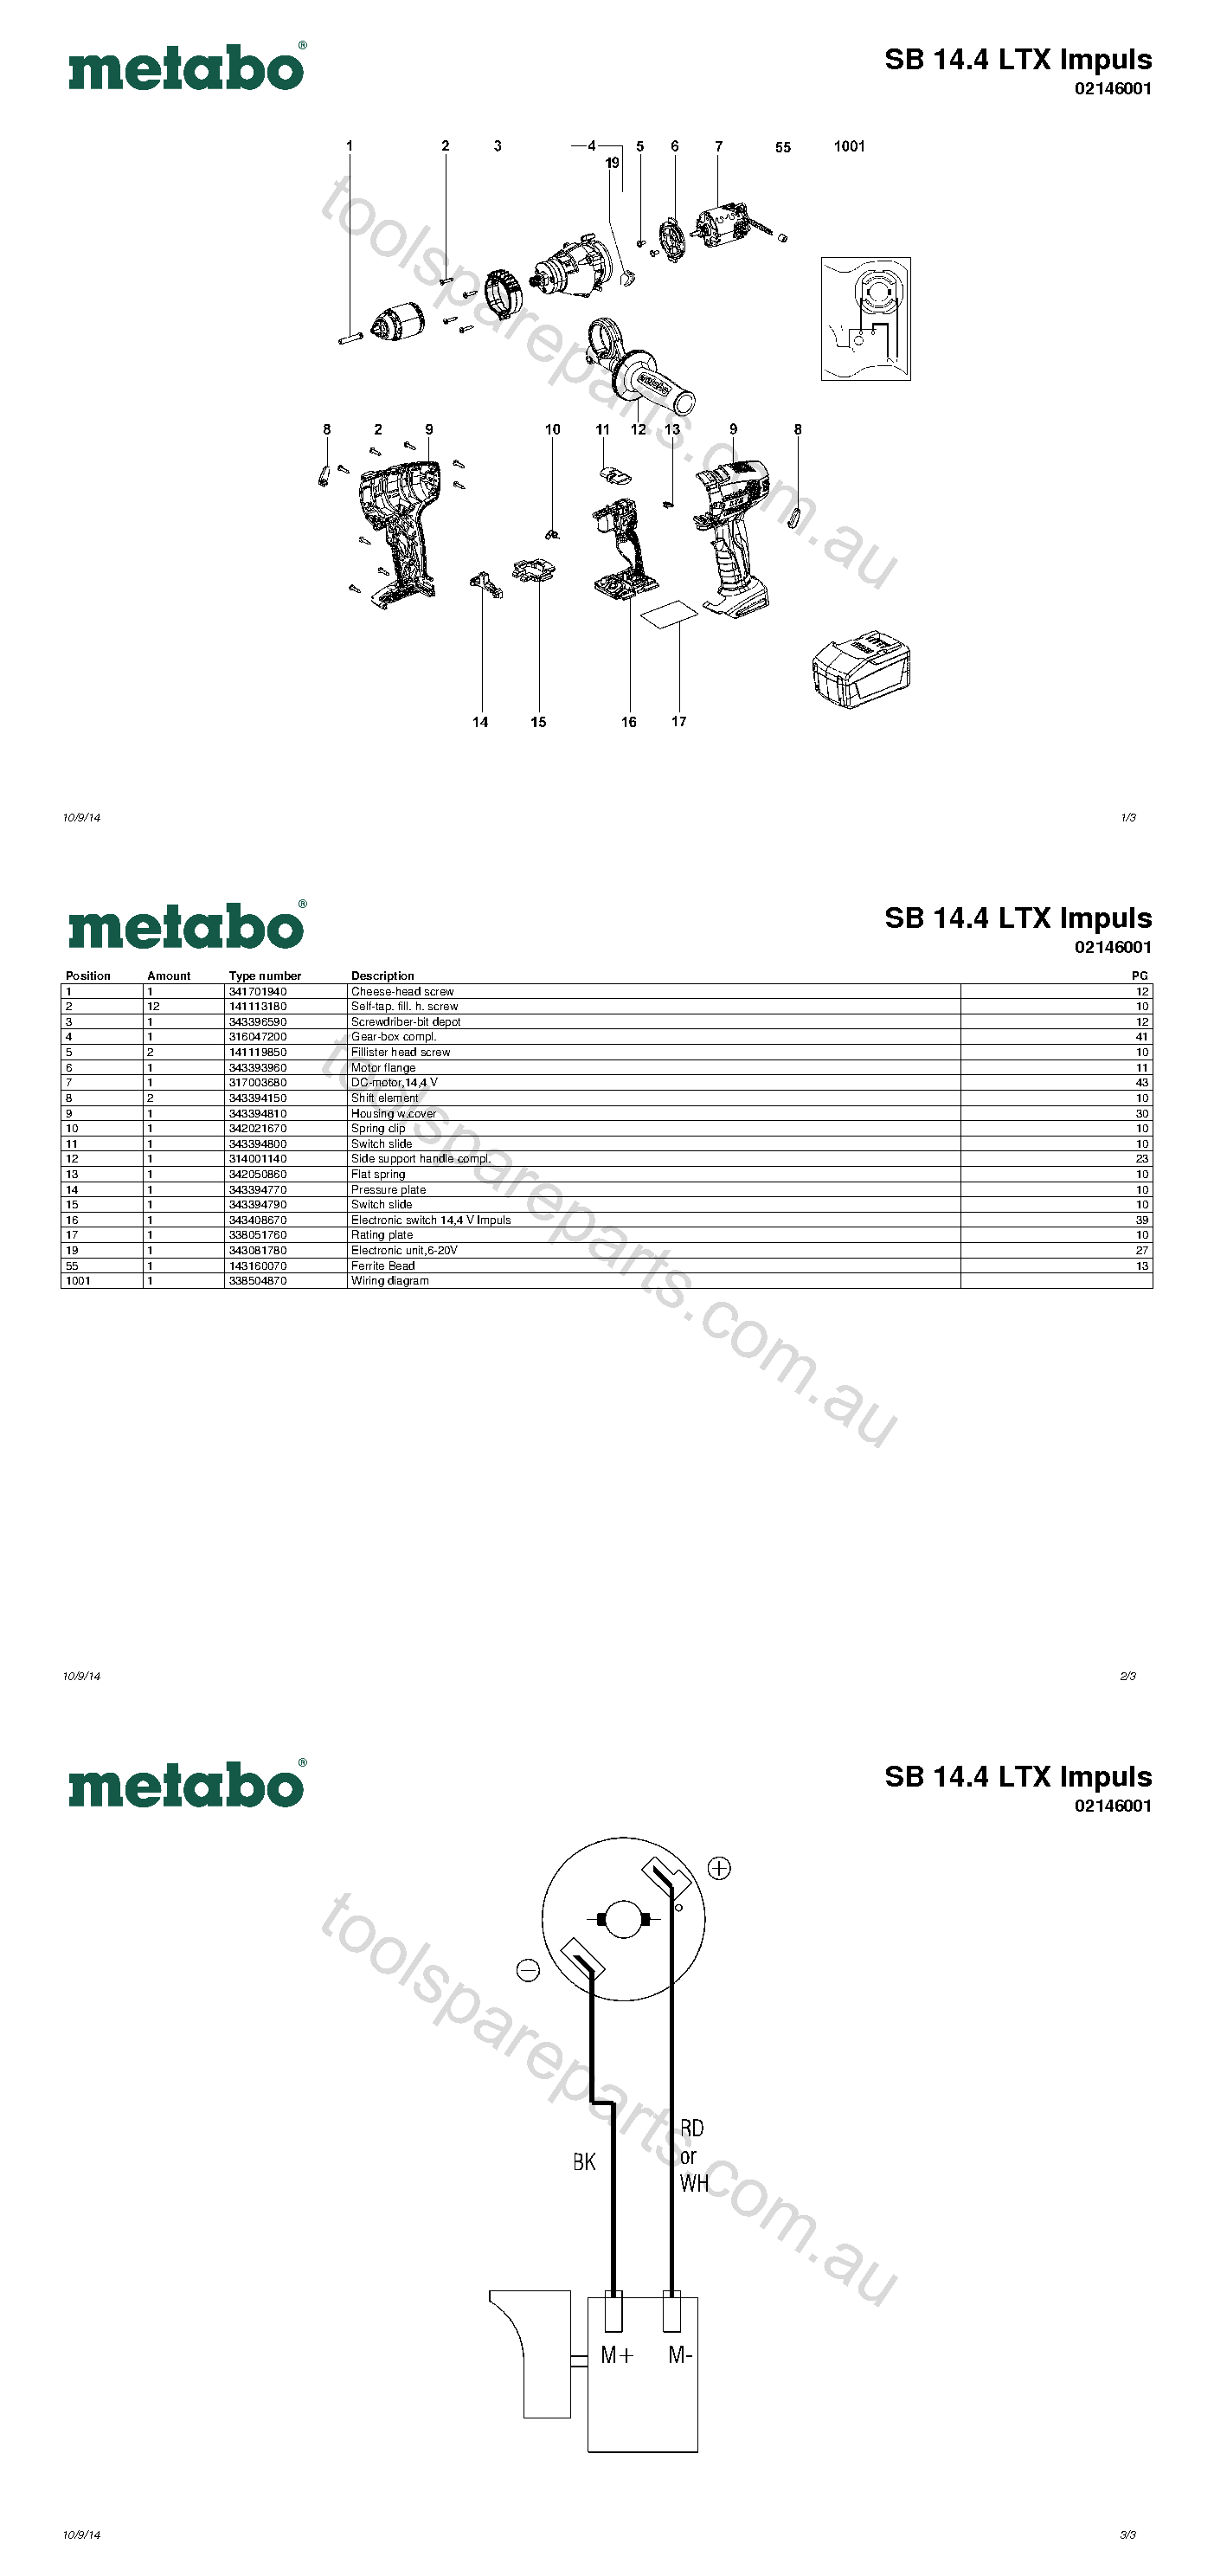 Metabo SB 14.4 LTX Impuls 02146001  Diagram 1